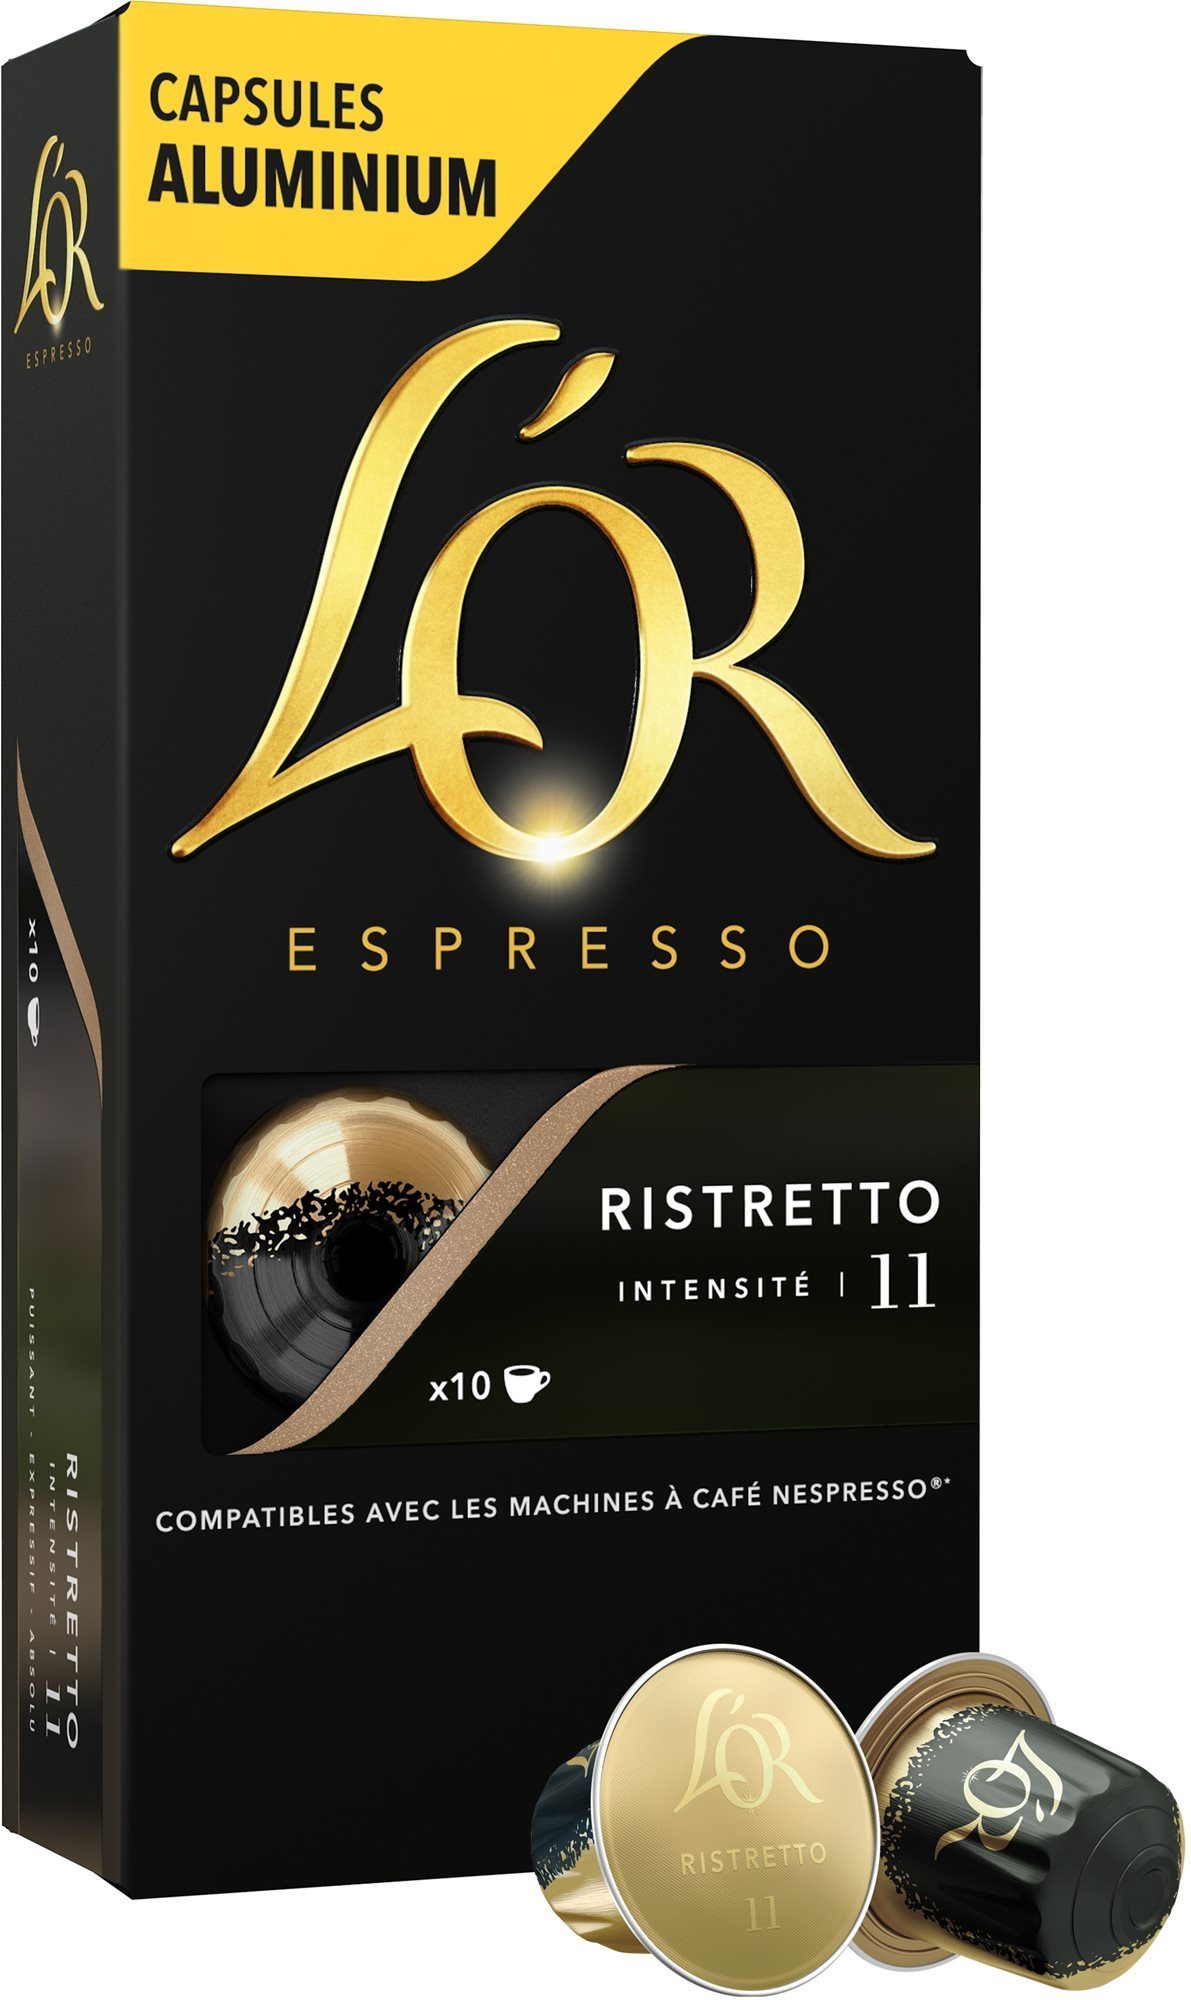 L'OR Espresso Ristretto 10 db, alumínium